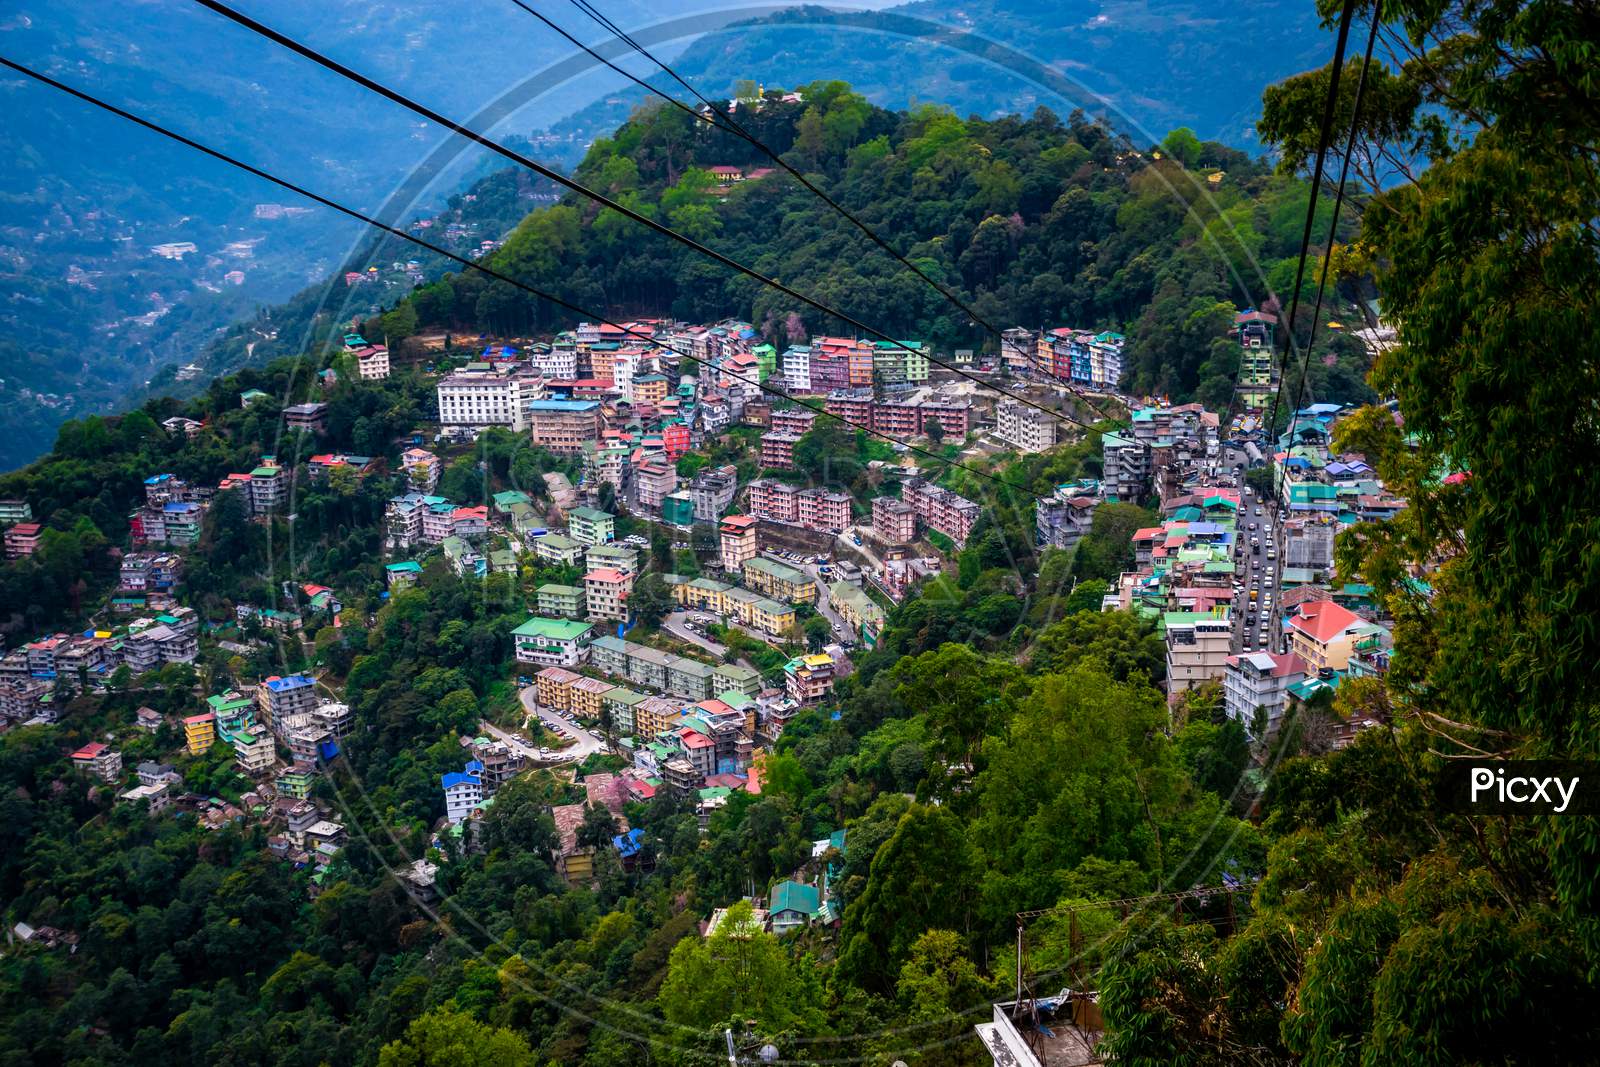 The clean city Gangtok